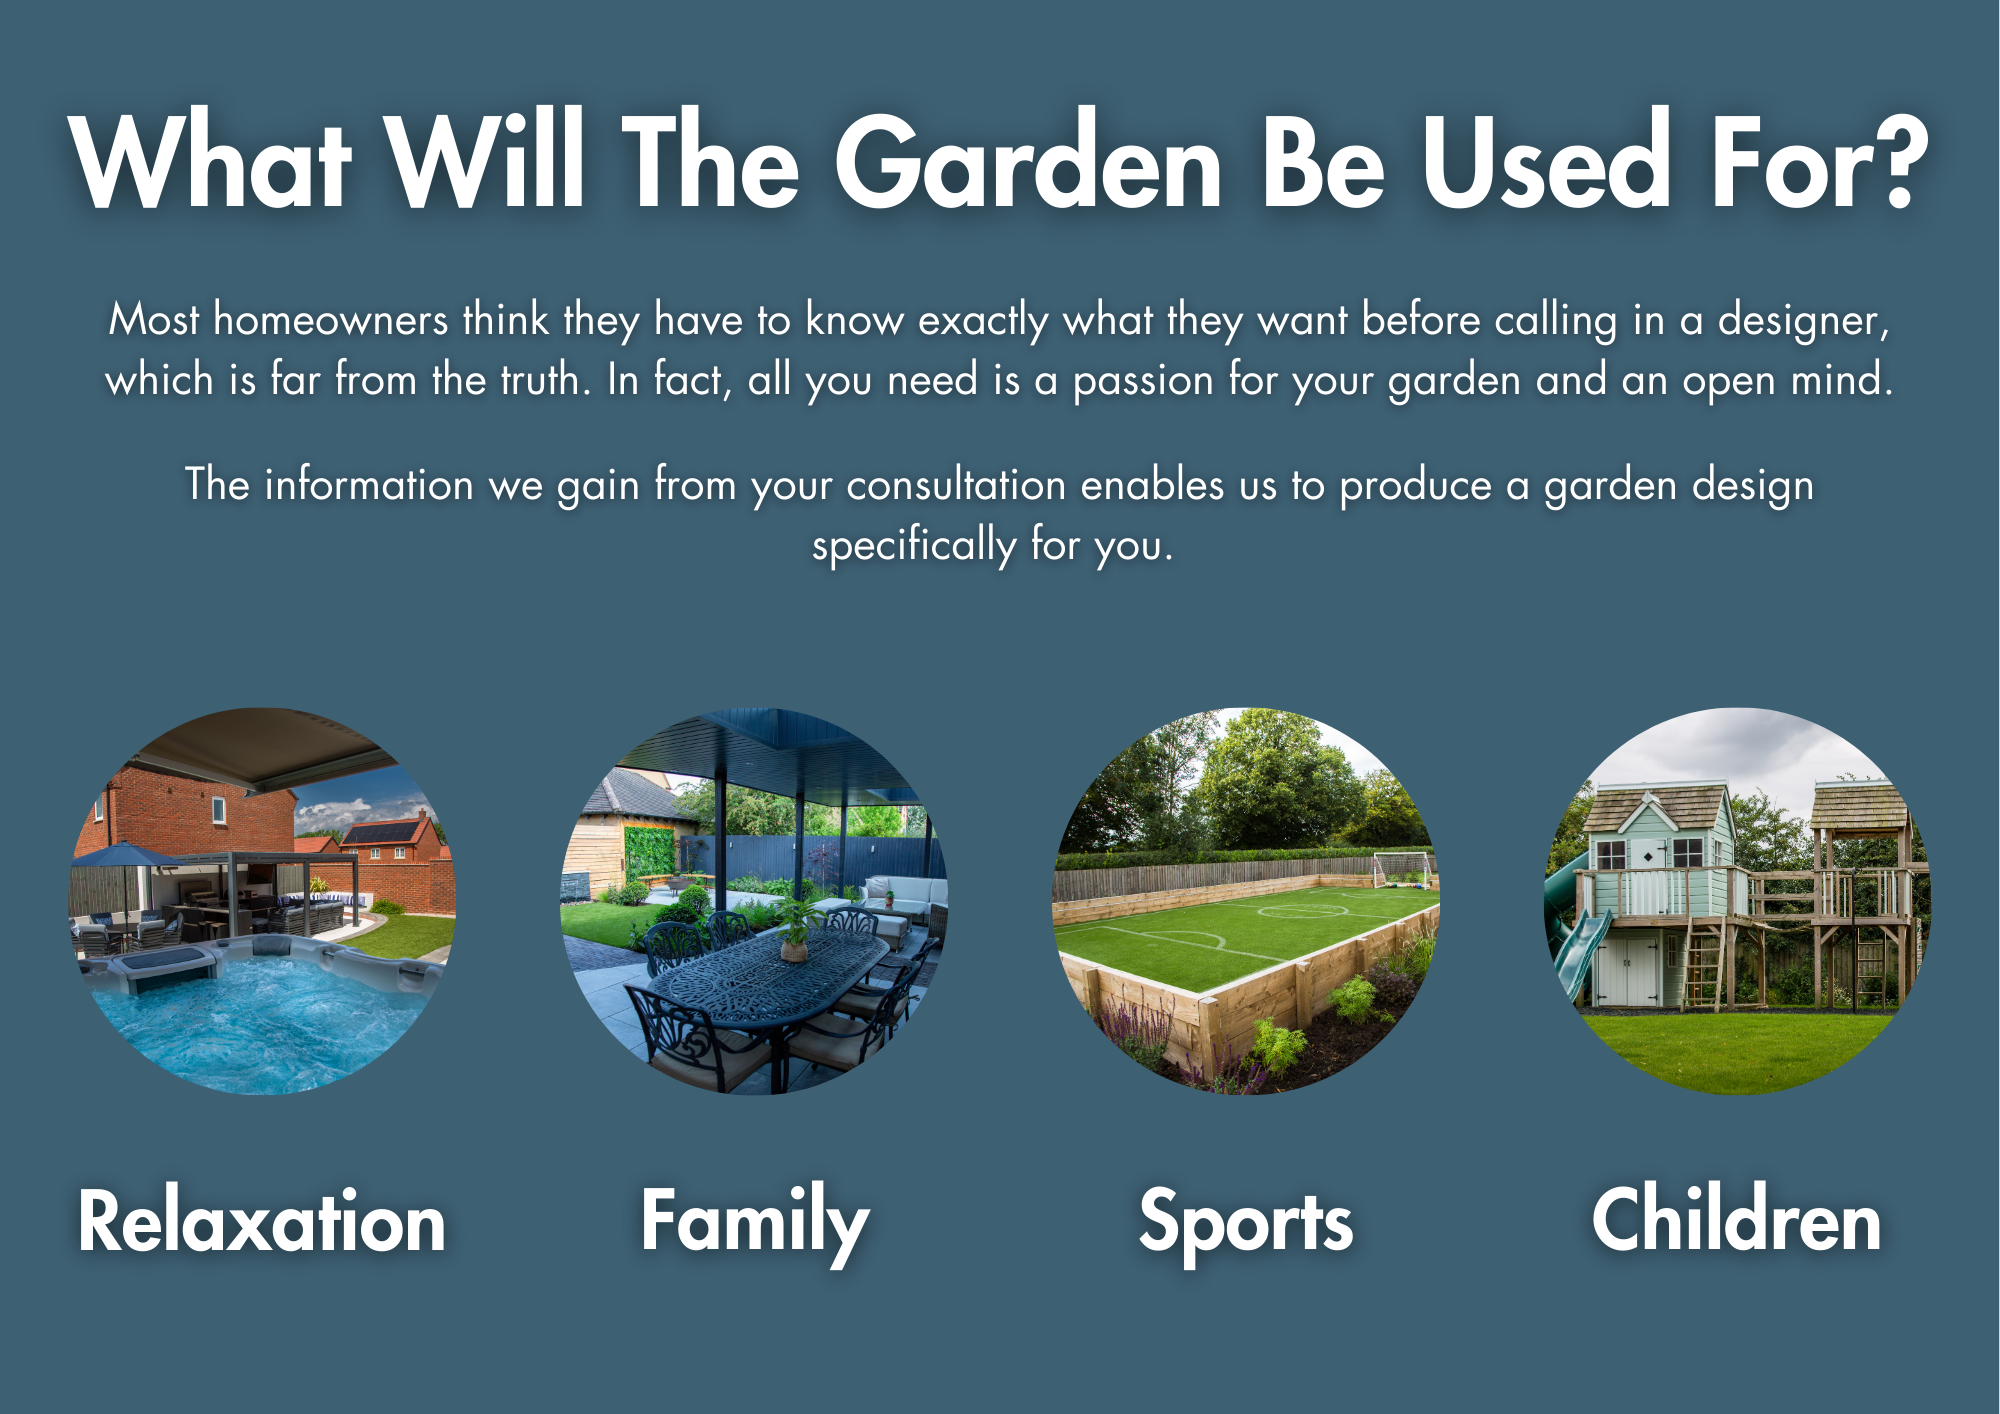 Garden Use